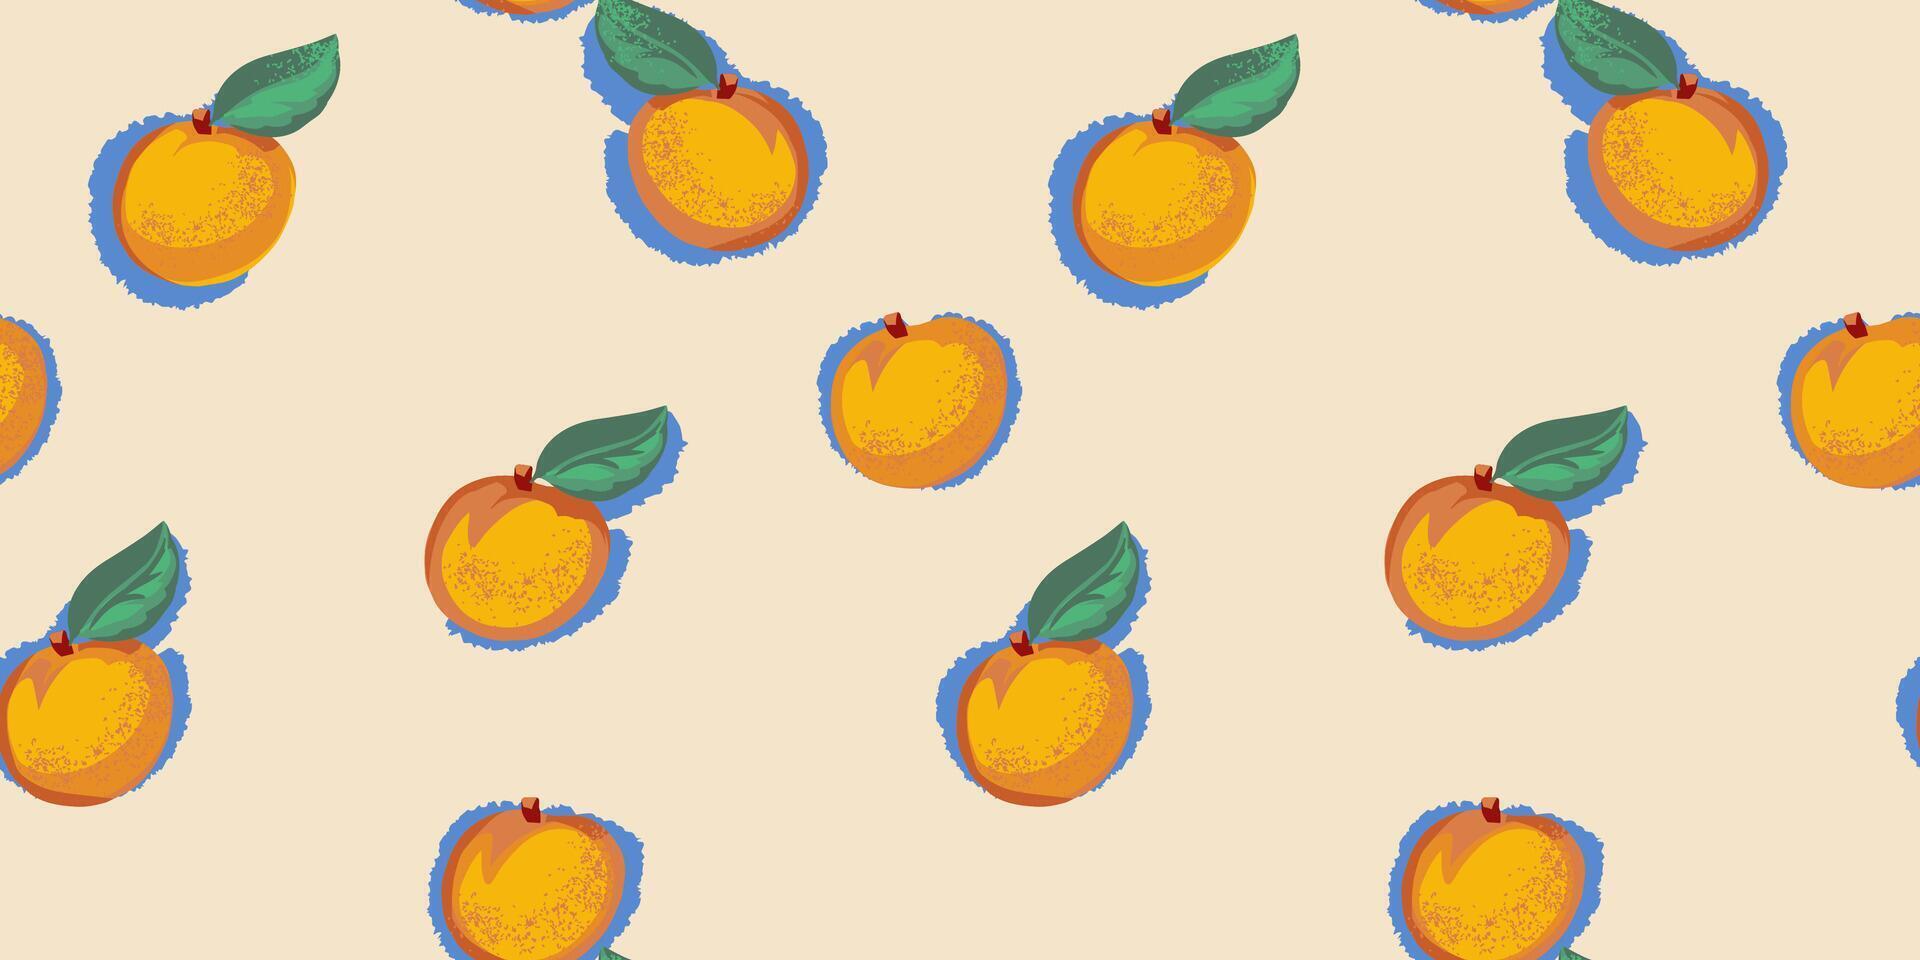 abstrakt stiliserade aprikoser eller persikor med löv spridd slumpvis i en sömlös mönster. vektor hand dragen skiss illustration. sommar retro kreativ frukt mönstrad på en beige ljus bakgrund.